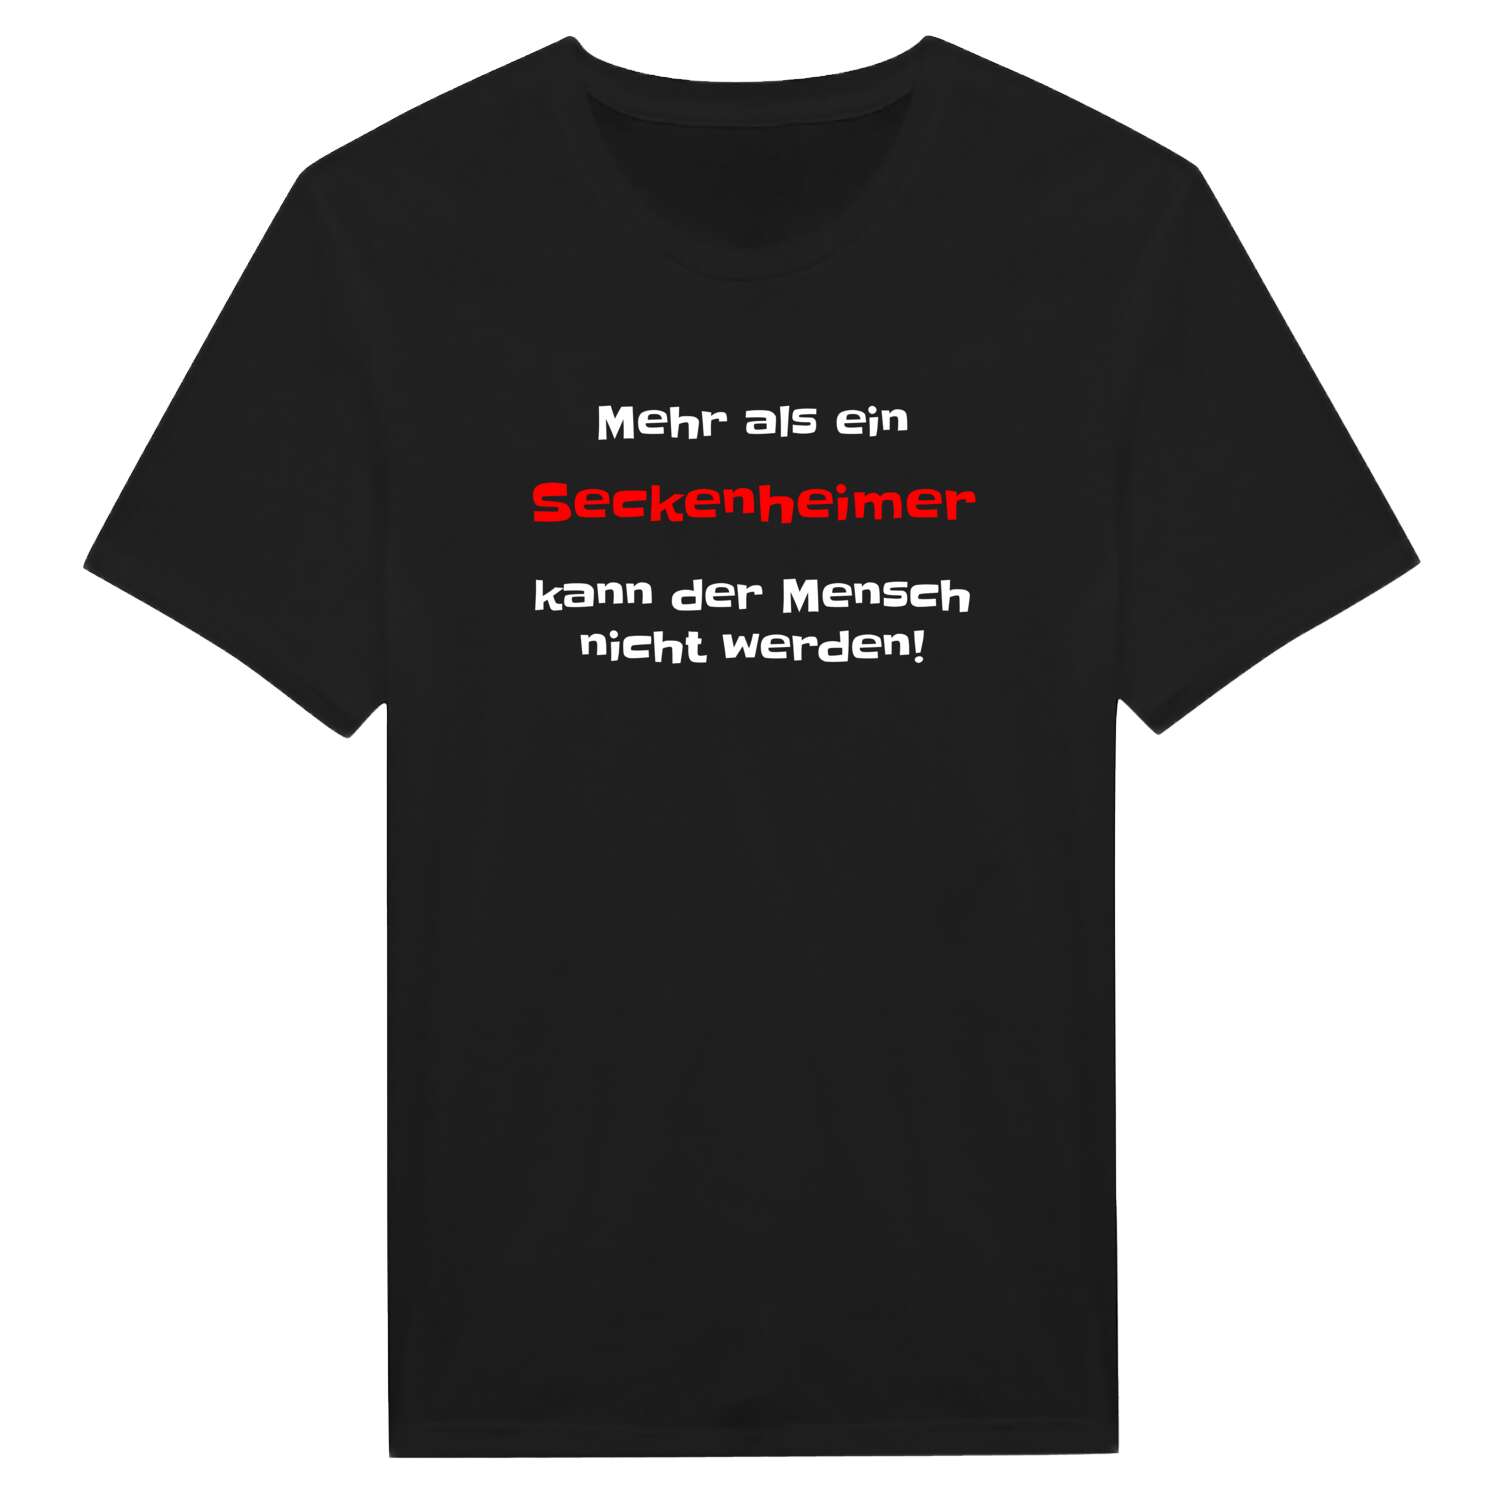 Seckenheim T-Shirt »Mehr als ein«